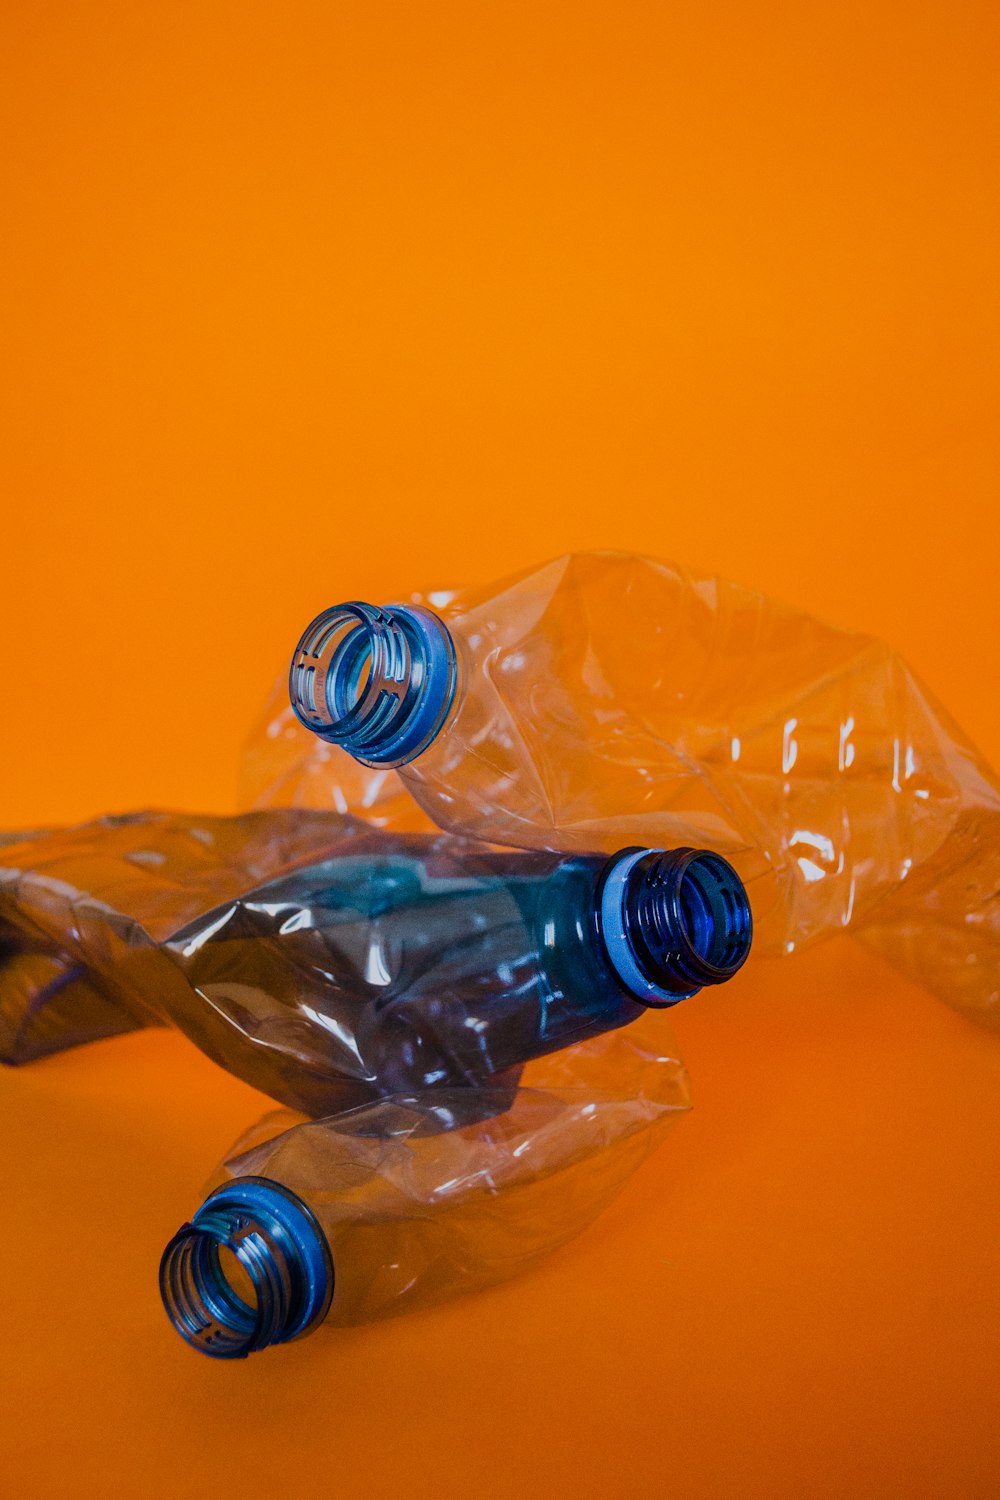 bouteille en plastique bleue sur la surface orange